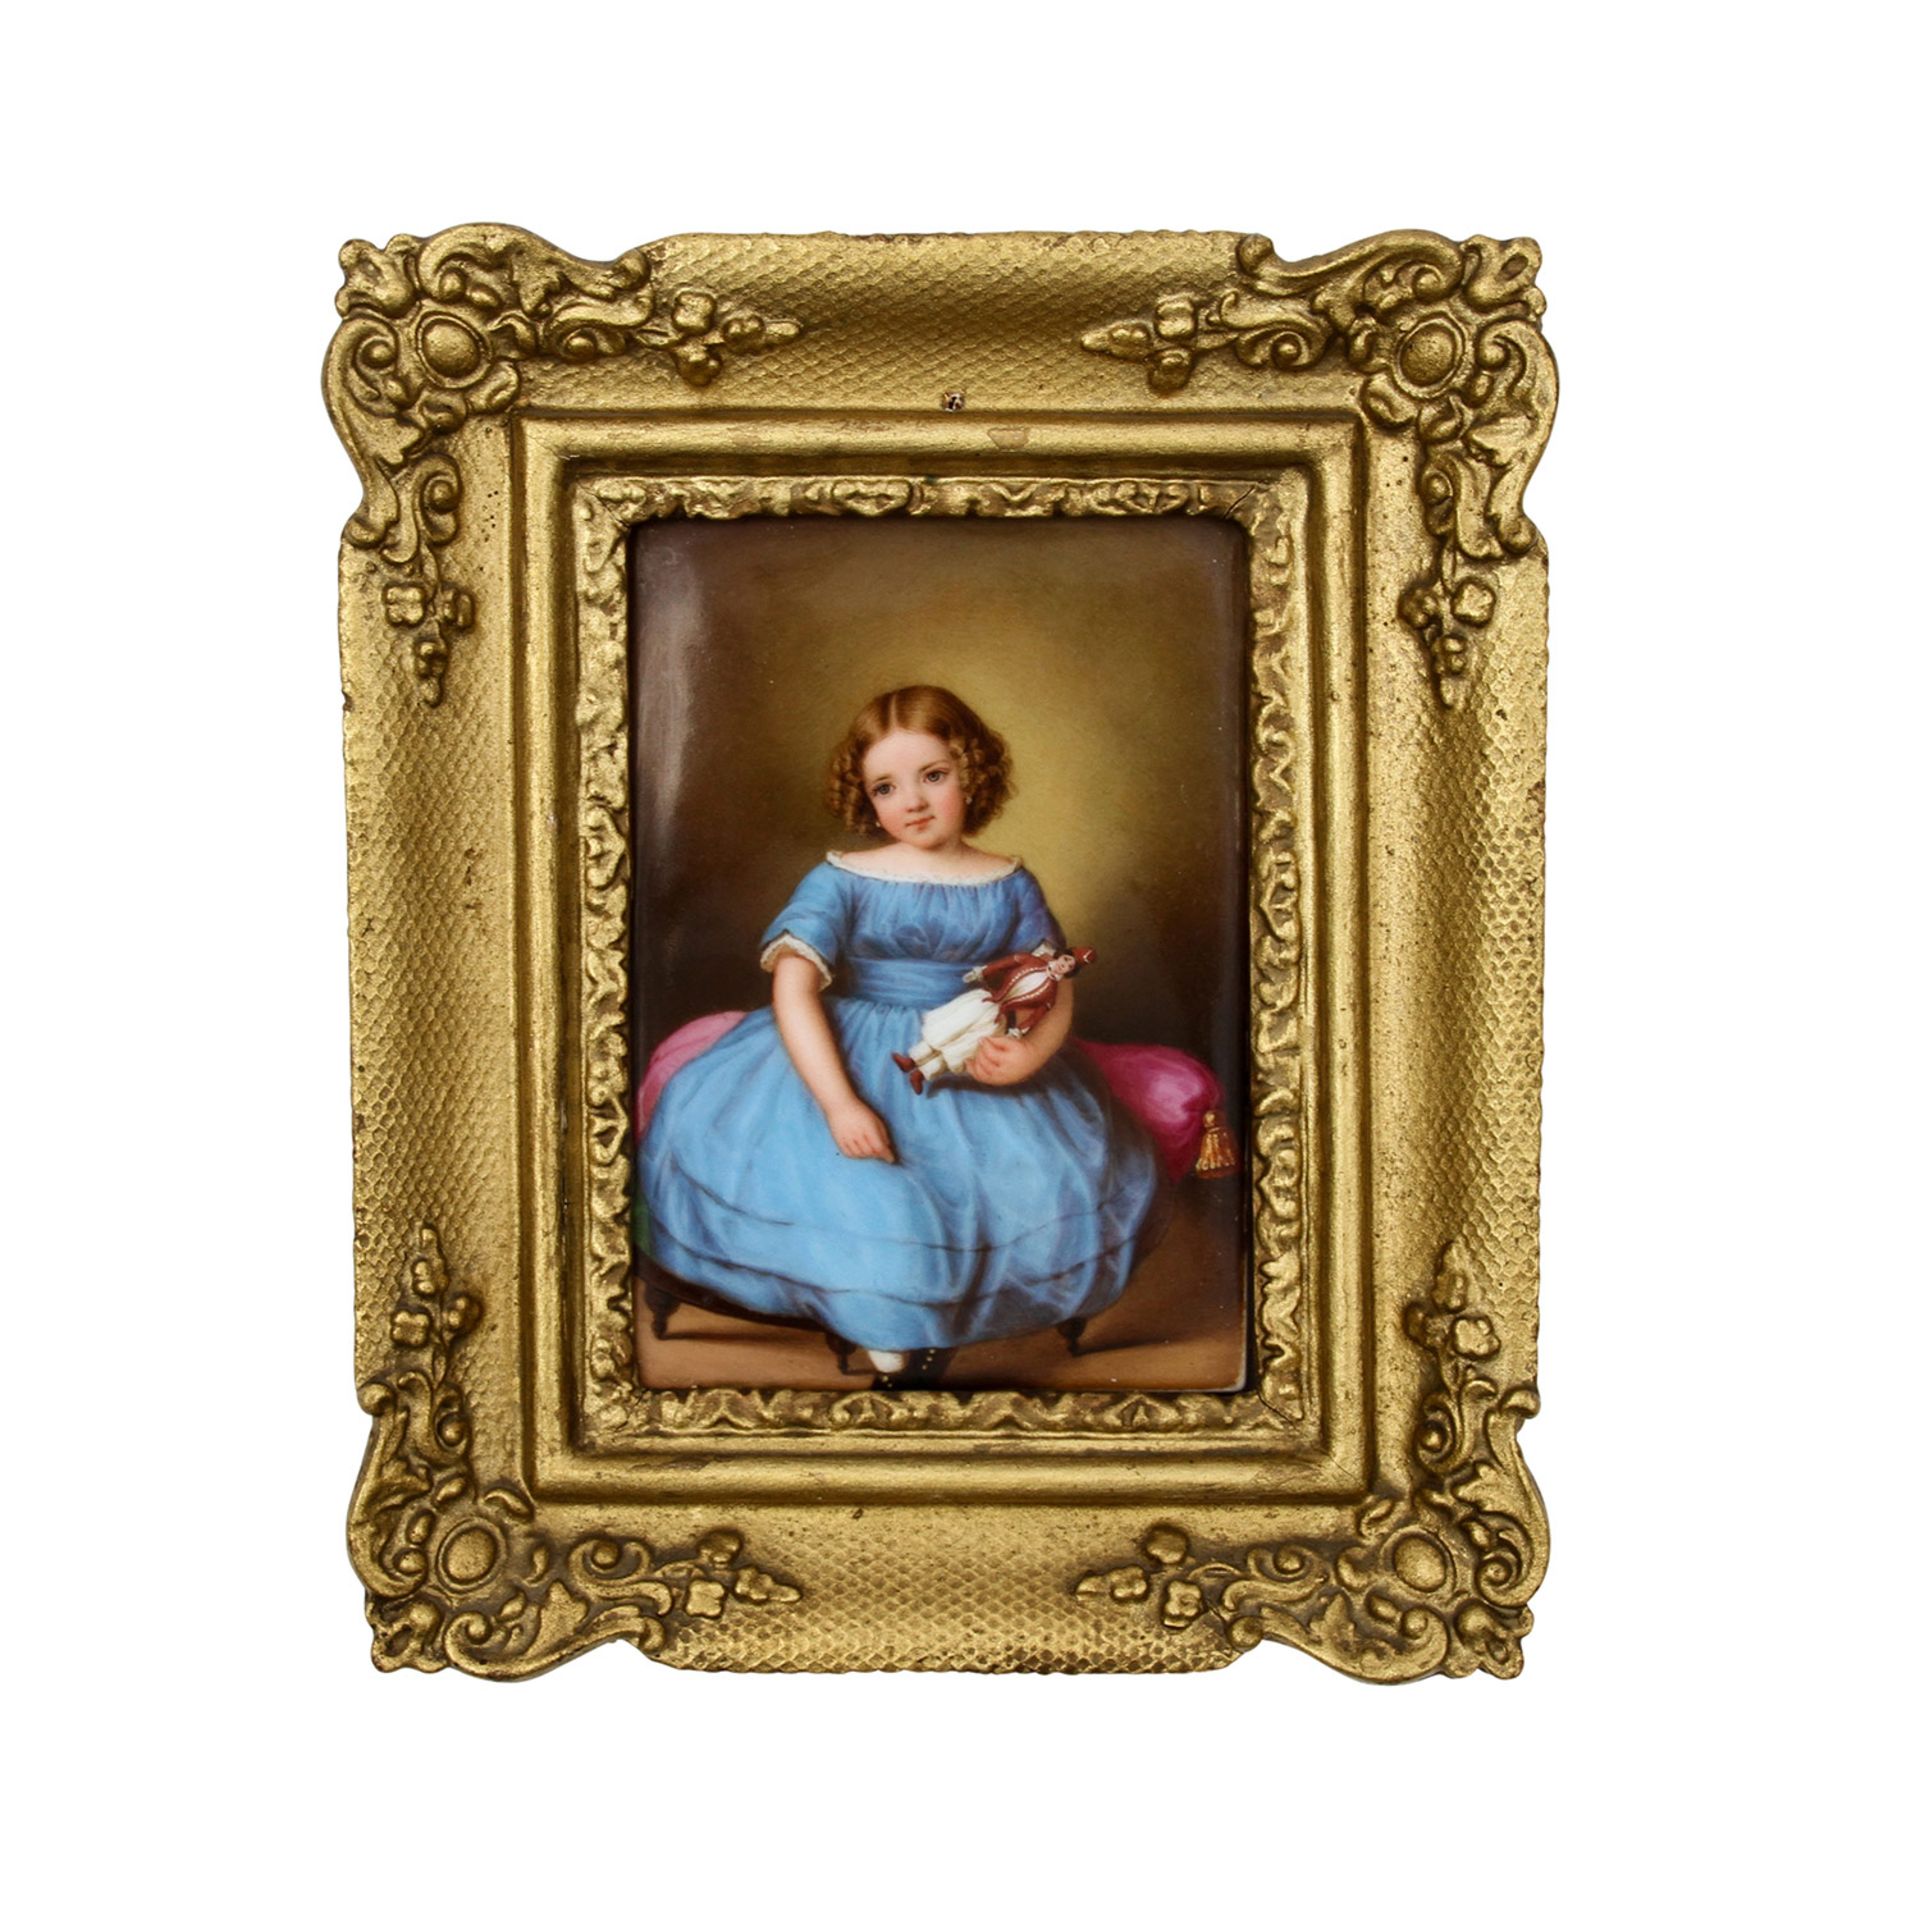 Porzellanbildplatte "Mädchen mit Puppe", 19. Jh. Miniaturporträt eines hübsch frisierten Mädchens